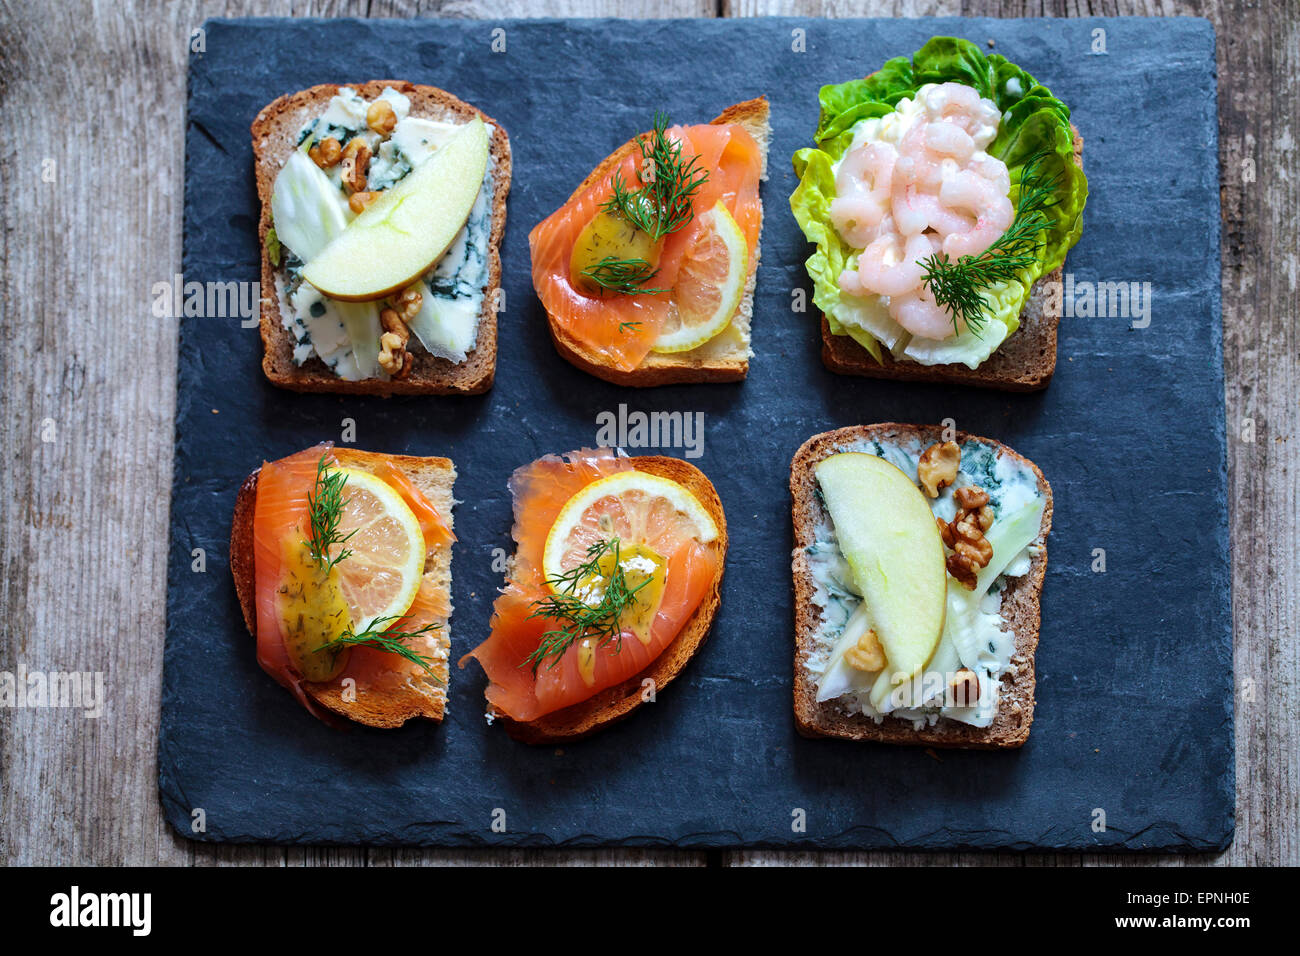 Sélection de sandwiches ouverts scandinaves Banque D'Images